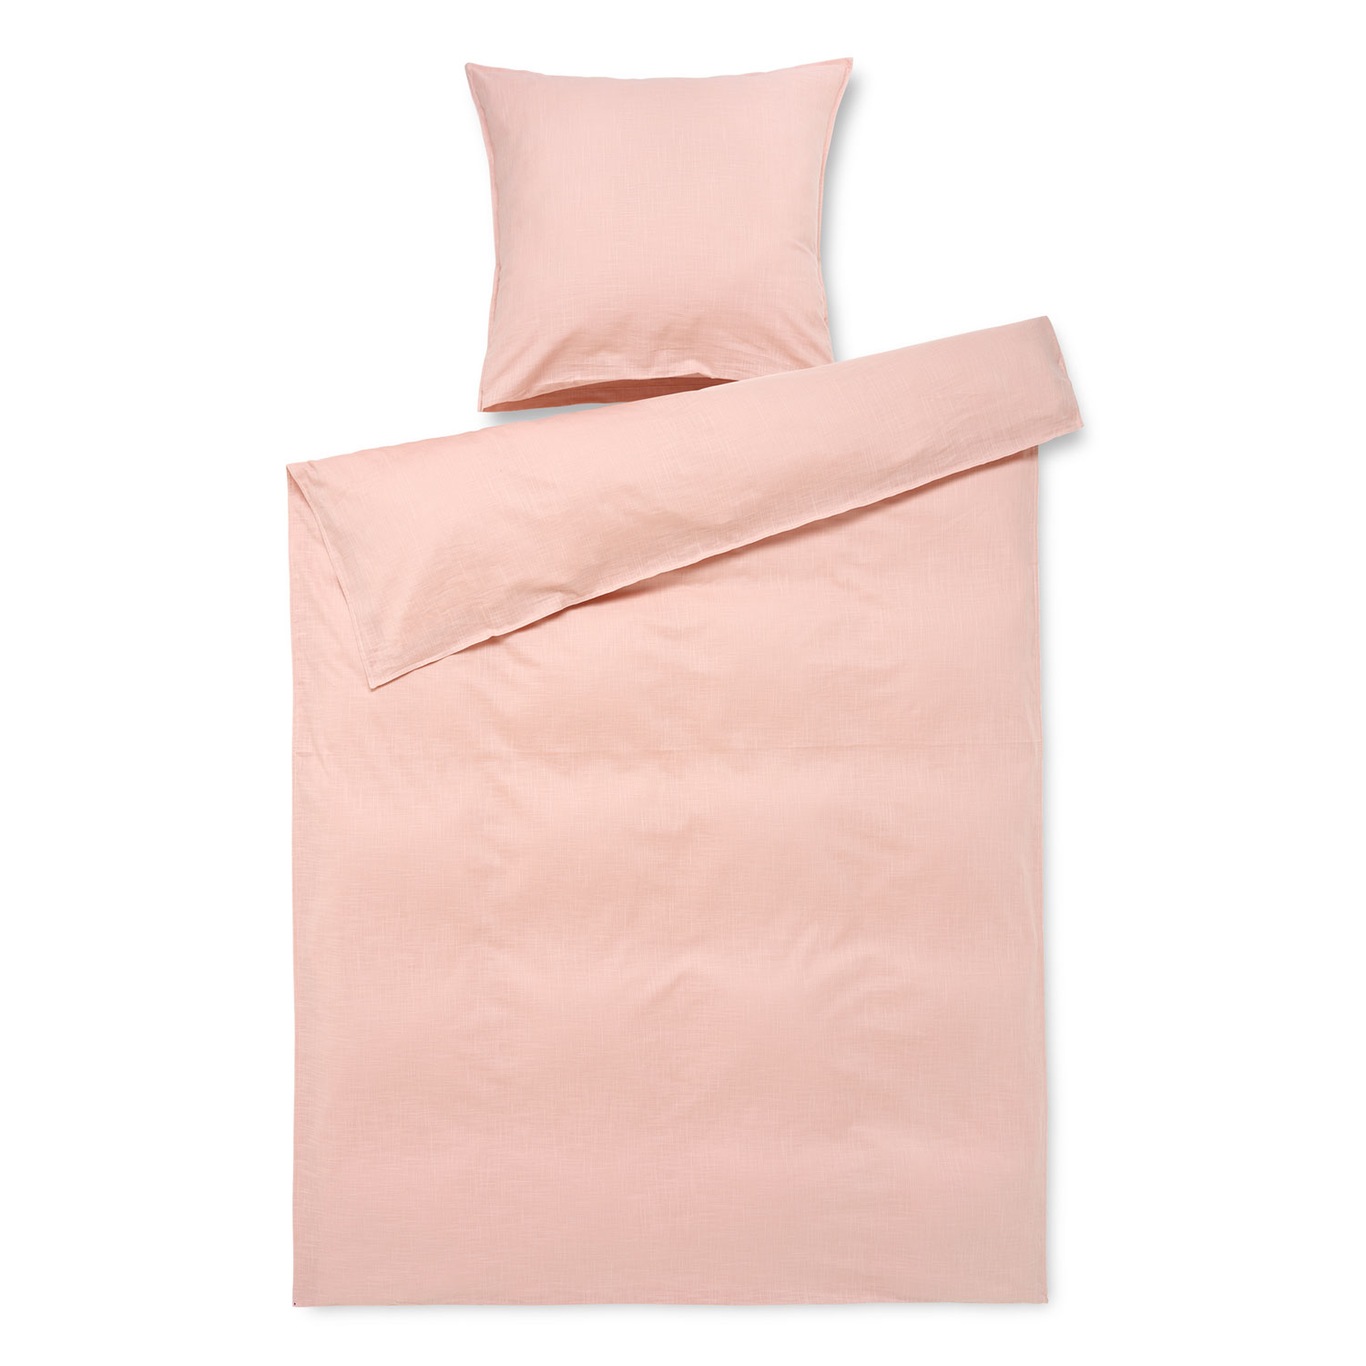 Monochrome Duvet Cover Pink, 150x210 cm